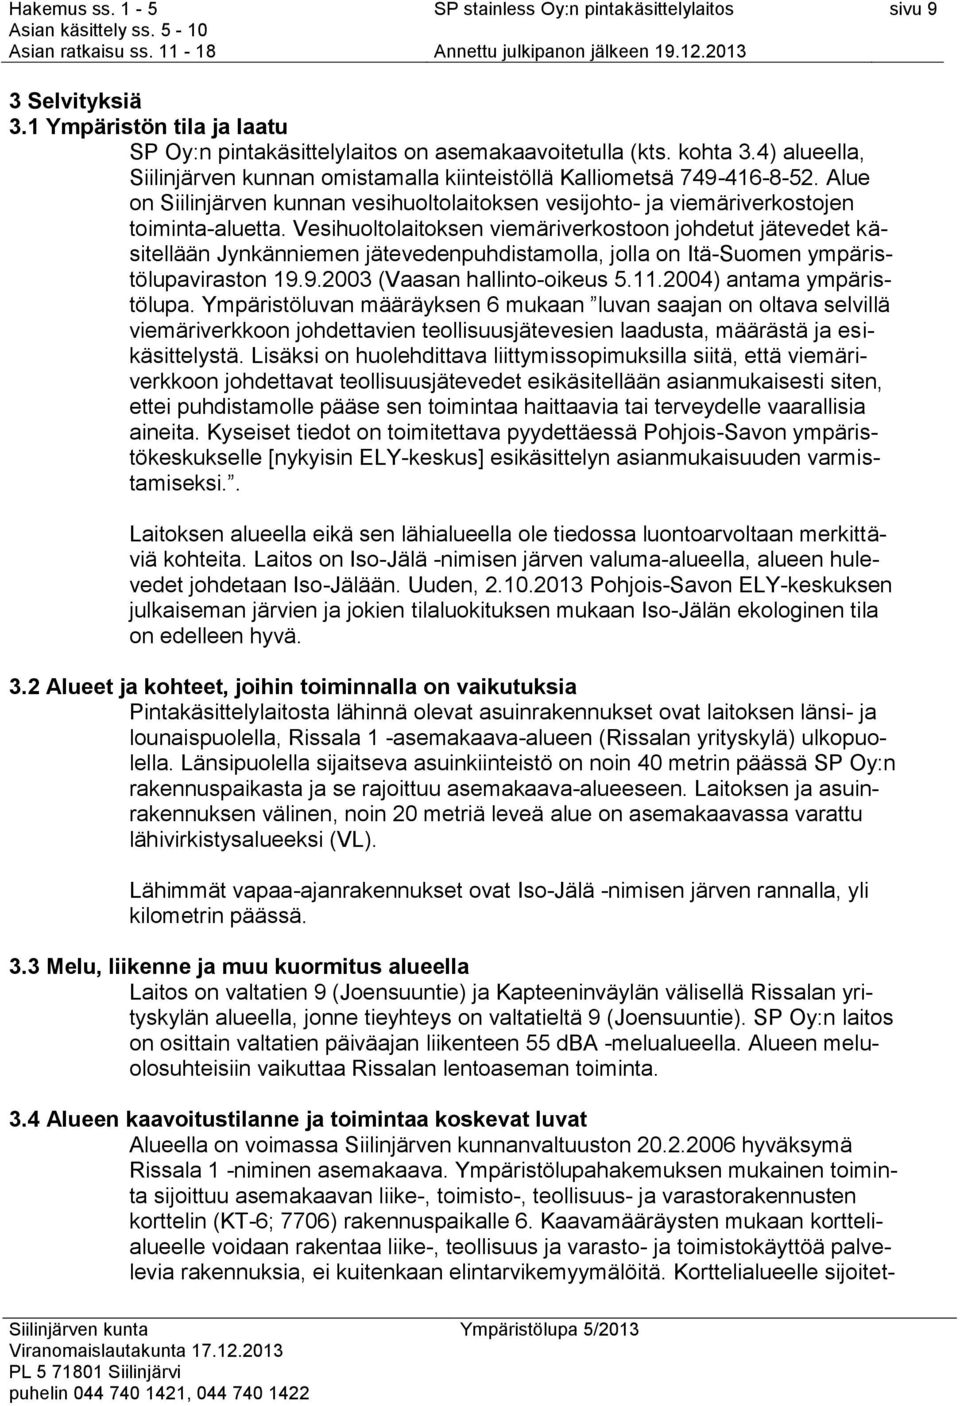 Vesihuoltolaitoksen viemäriverkostoon johdetut jätevedet käsitellään Jynkänniemen jätevedenpuhdistamolla, jolla on Itä-Suomen ympäristölupaviraston 19.9.2003 (Vaasan hallinto-oikeus 5.11.